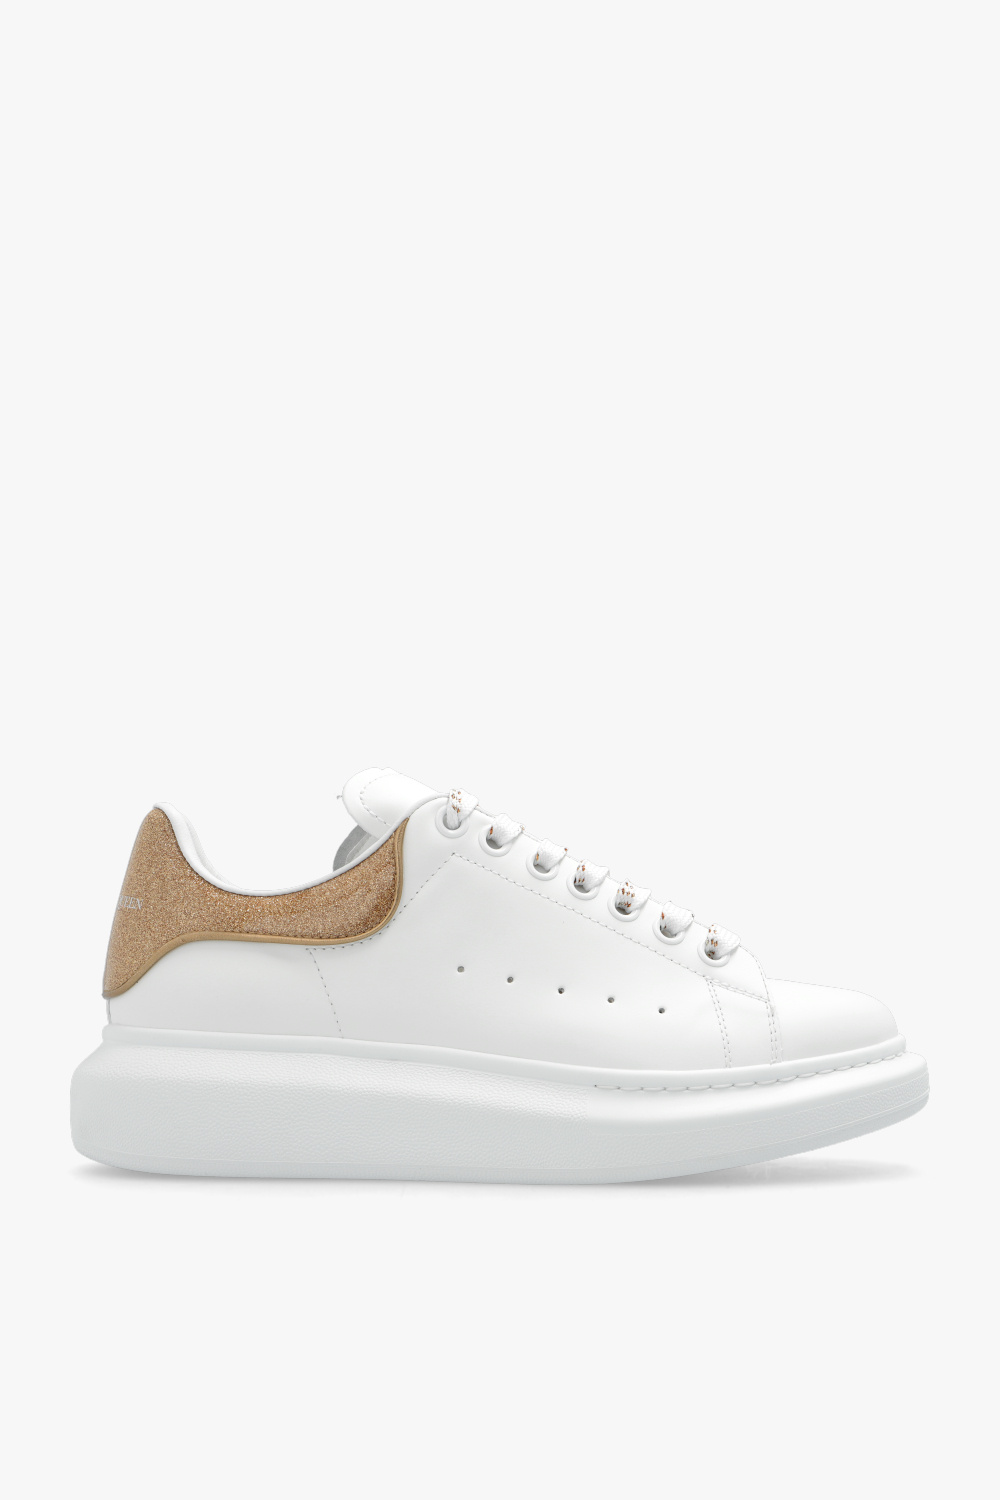 Alexander McQueen ‘Larry’ sneakers | Women's Shoes | Vitkac